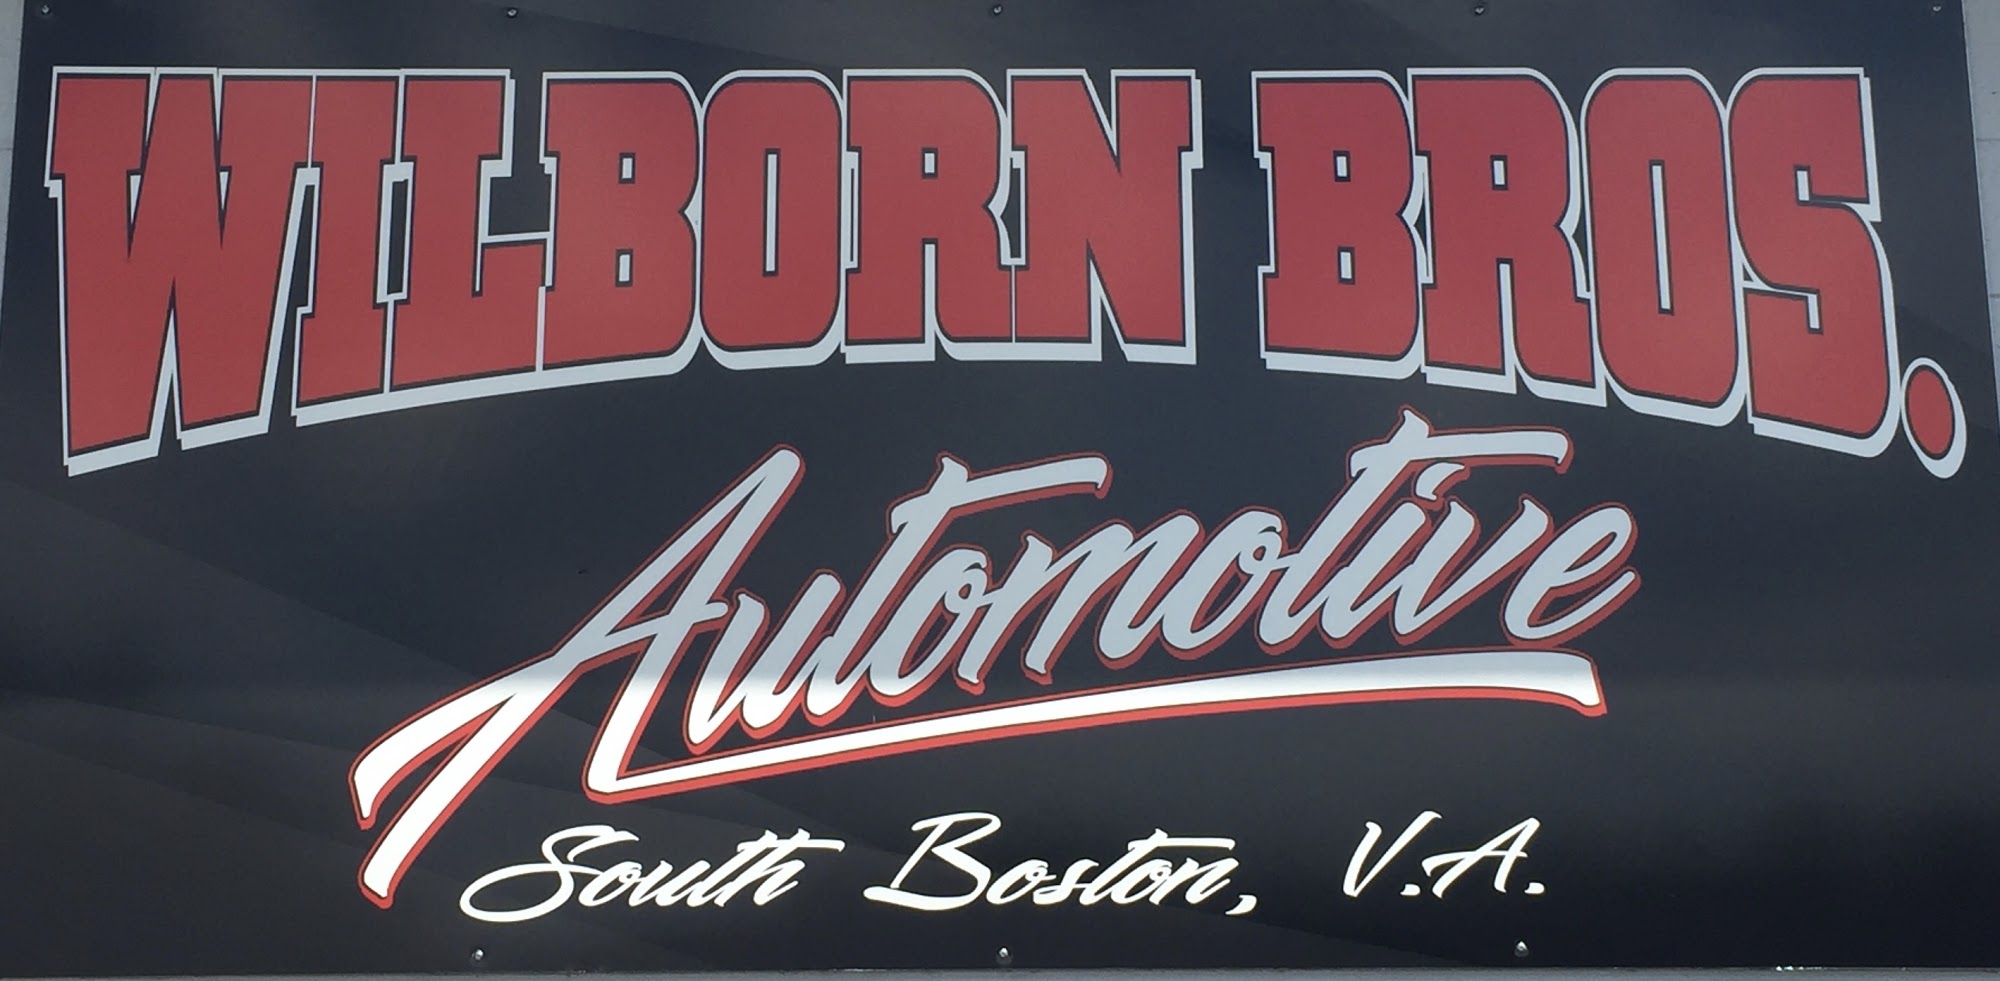 Wilborn Bros. Automotive